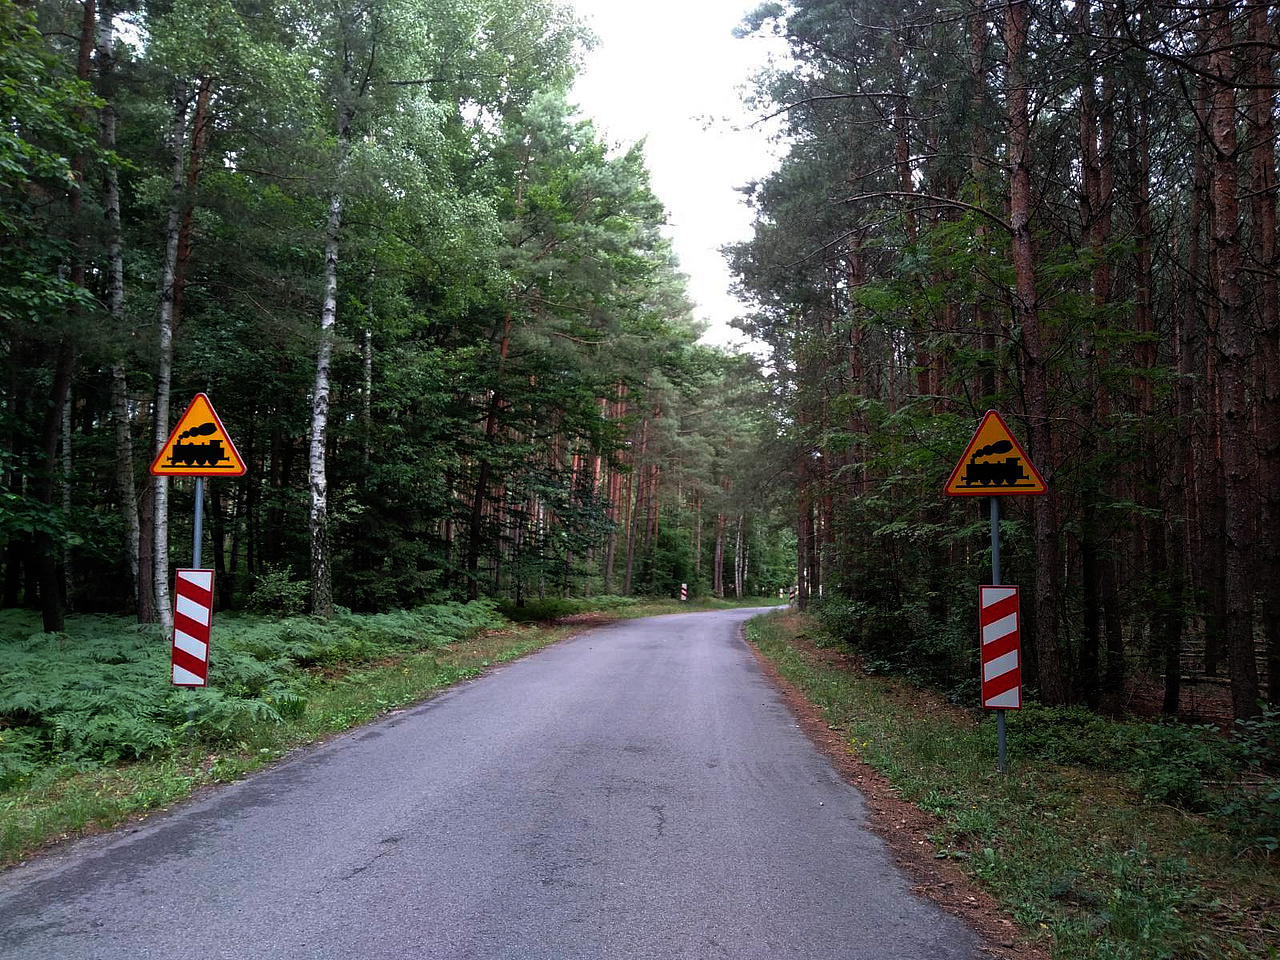 Widok na znaki A-10 przy drodze w środku lasu.